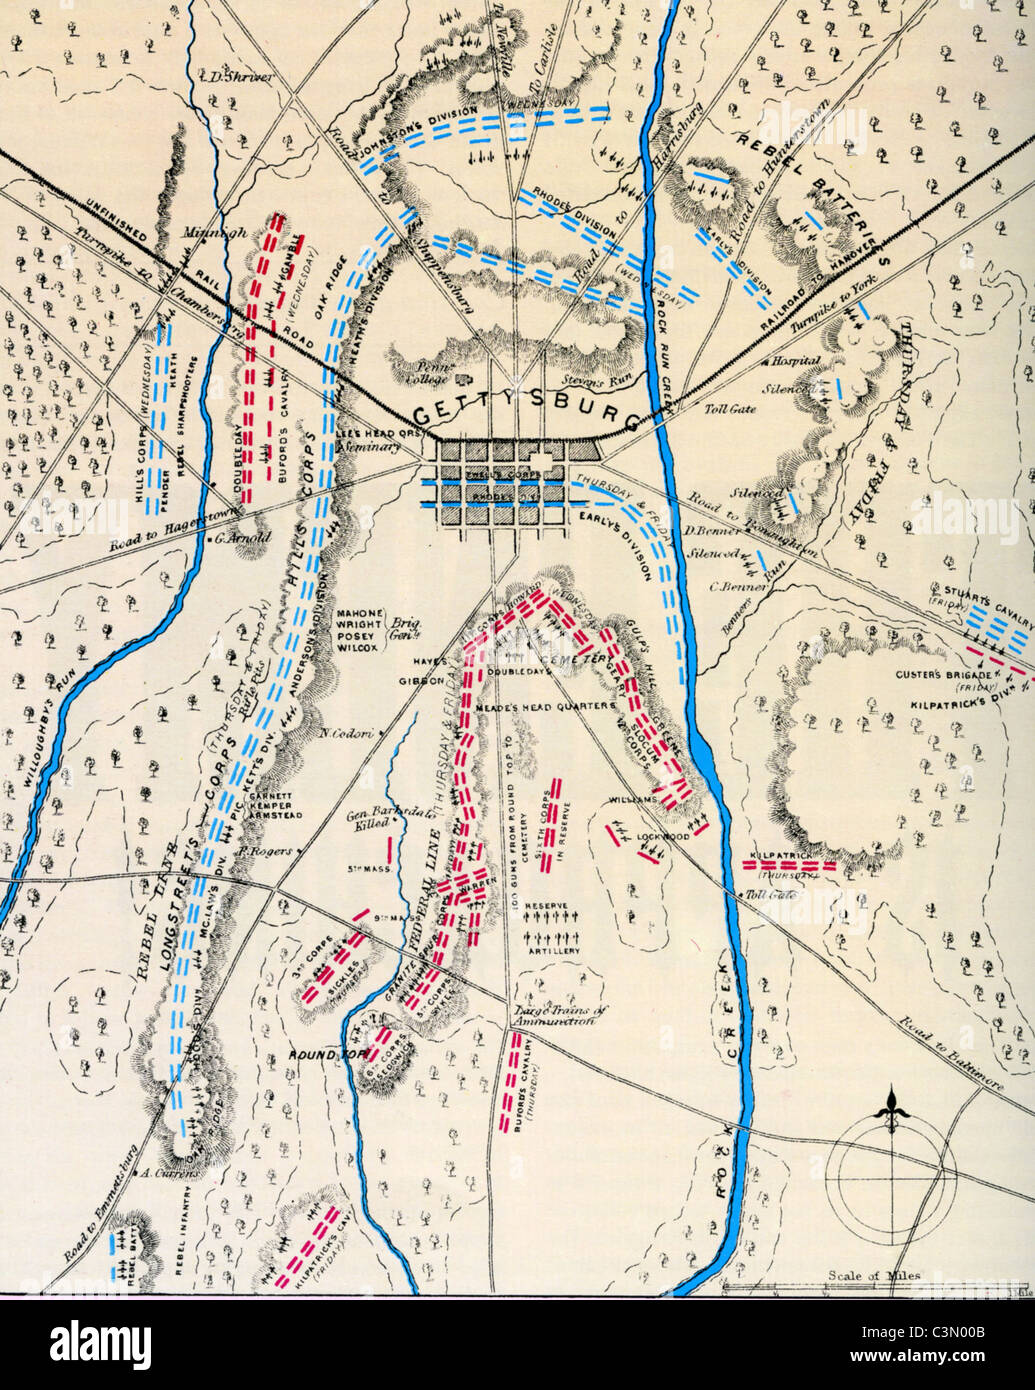 Battaglia di Gettysburg 1-3 luglio 1863. Mappa contemporaneo mostra forze dell'Unione in blu durante una prima fase della battaglia Foto Stock